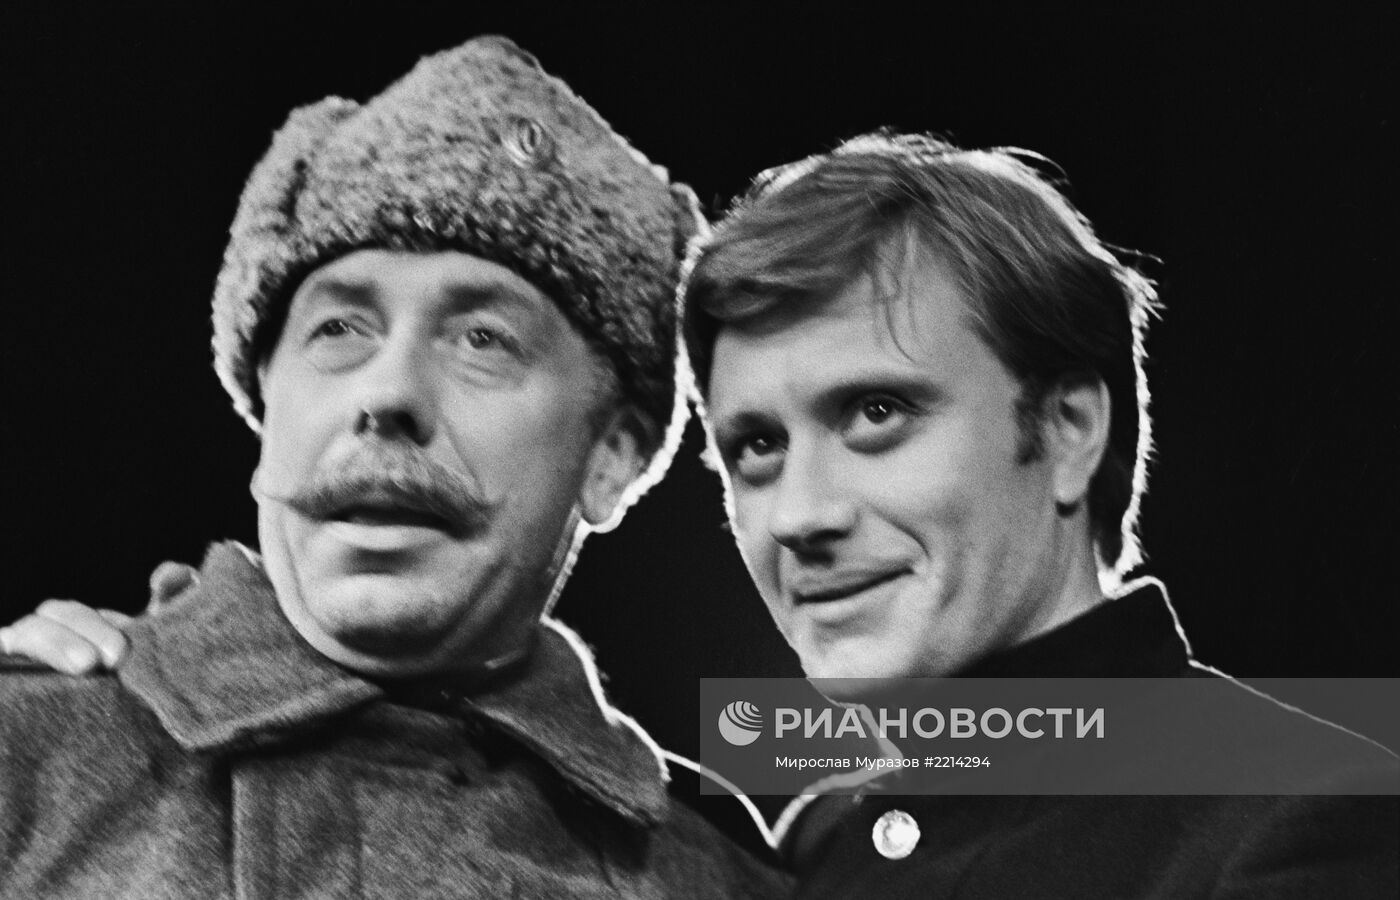 Артисты Анатолий Папанов и Андрей Миронов